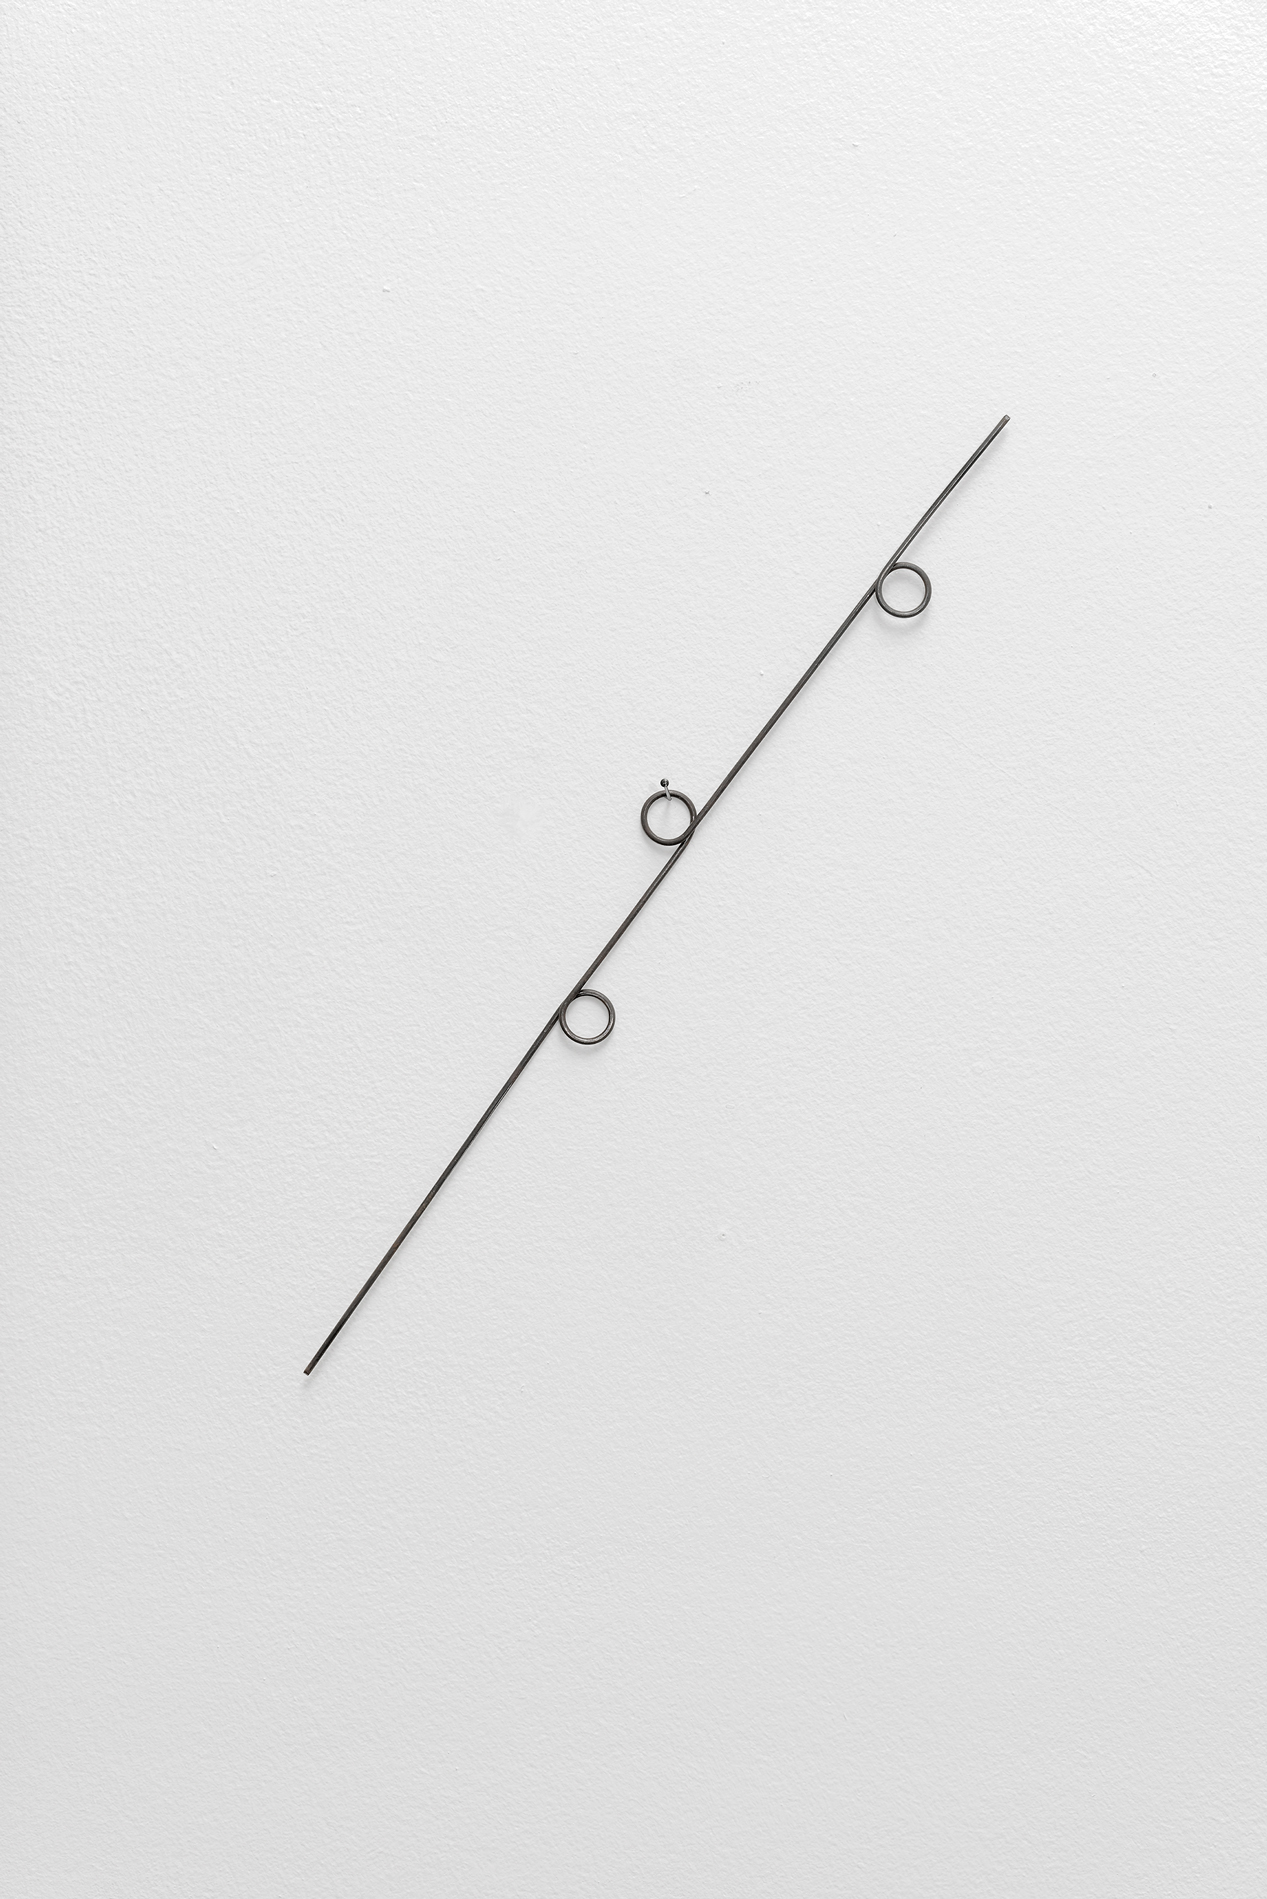 , 2017, Annealed steel, 28,6 x 1,5 x 0,2 cm, , unique artwork, Photo: Aurélien Mole